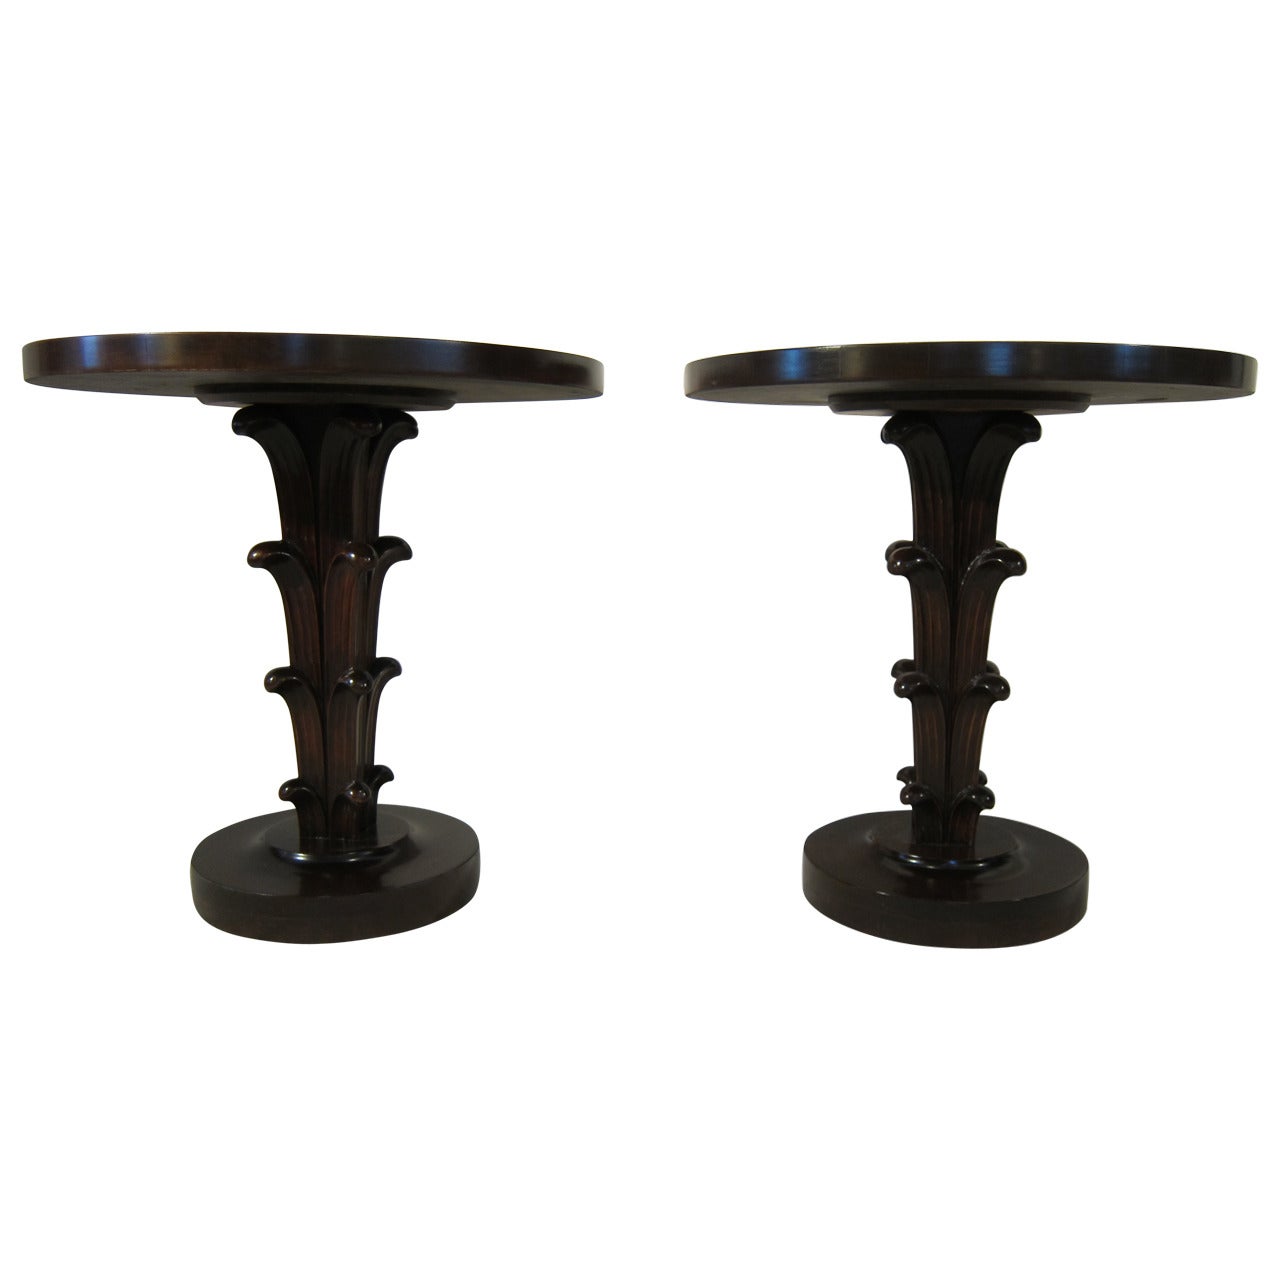 Robsjohn-Gibbings Design Pedestal Tables by Widdicomb for John Stuart